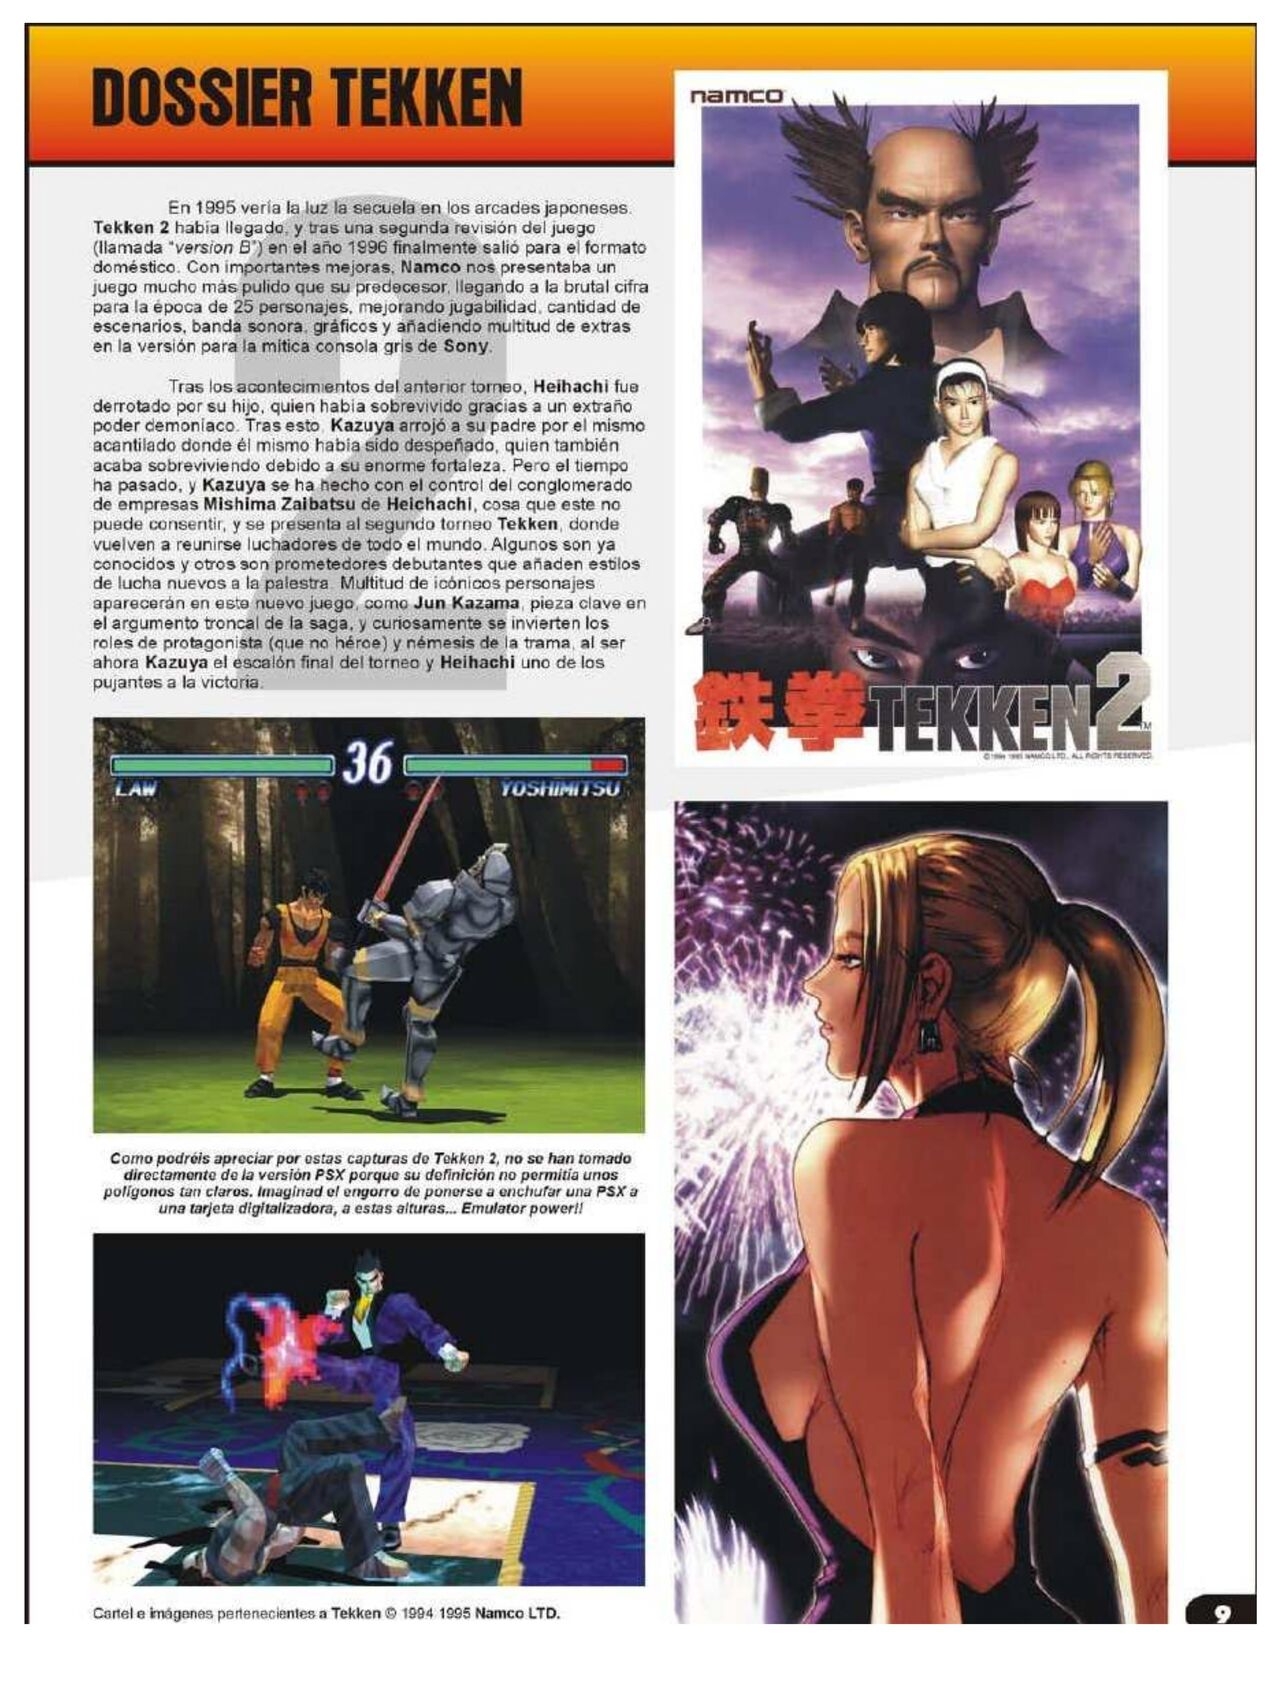 Magazine - Loading - #13 (2014. October) 8